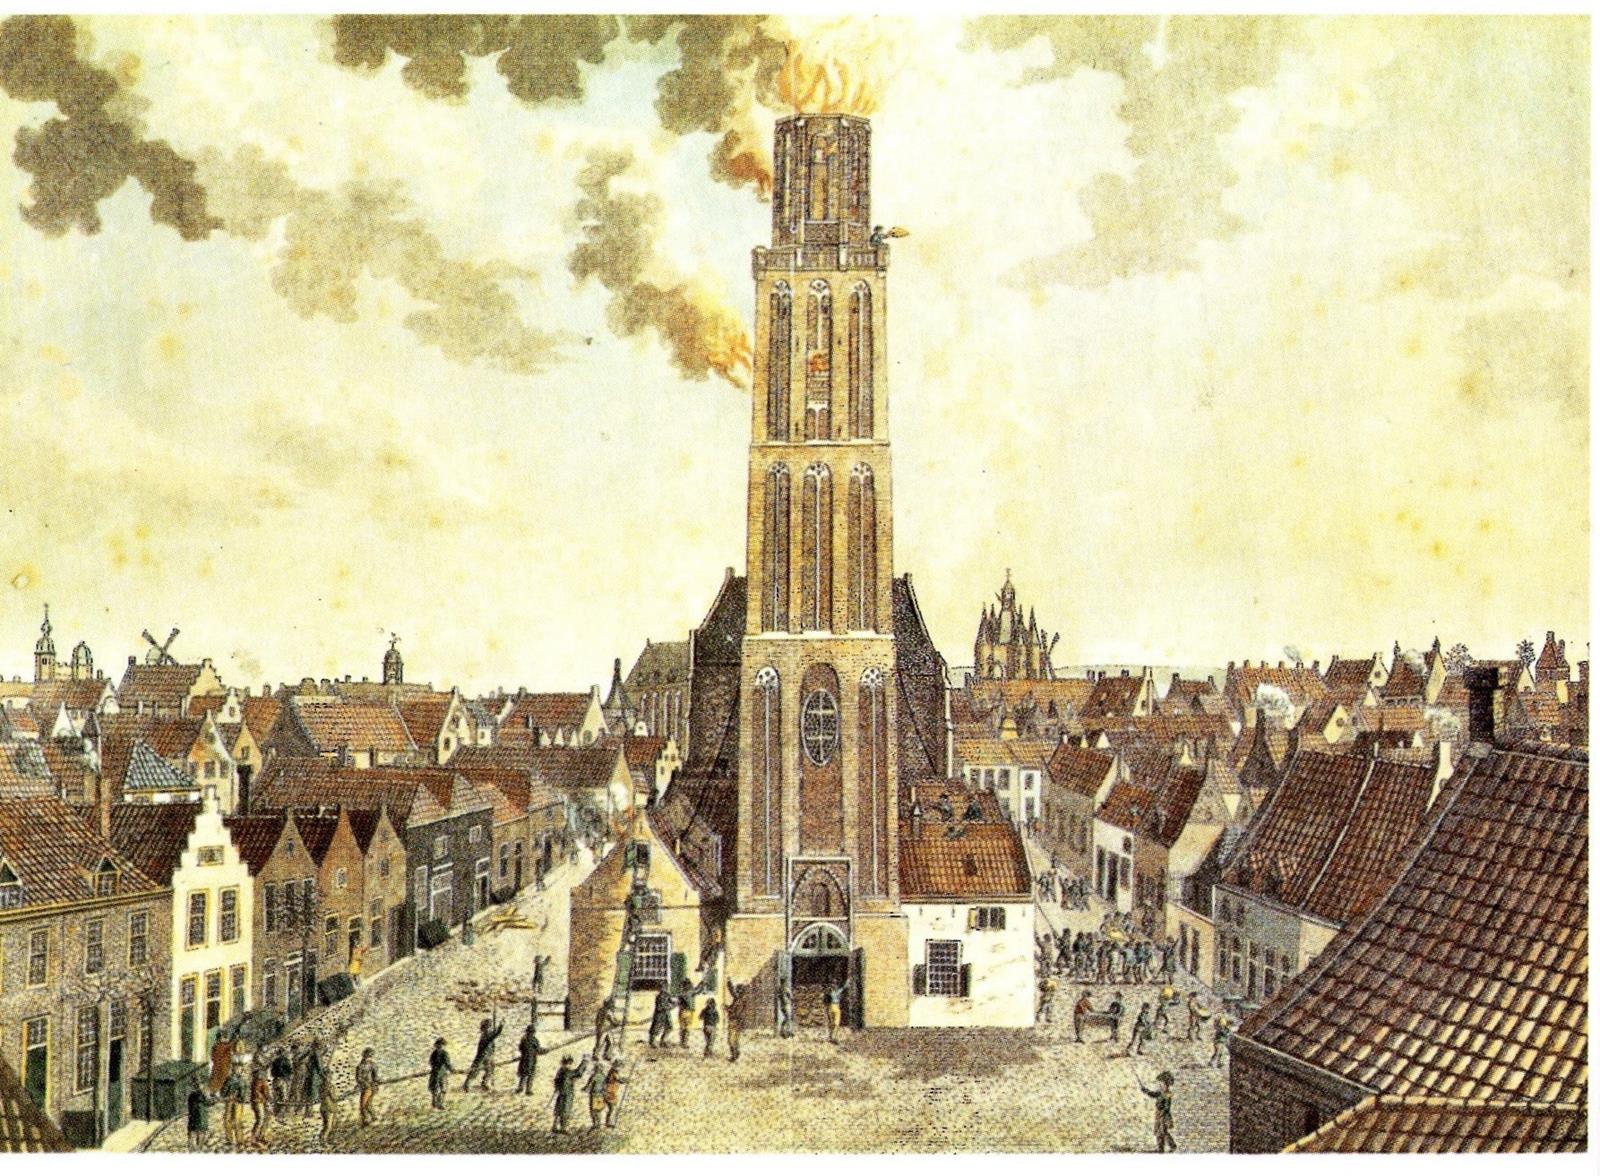 Torenbrand Onze Lieve Vrouwetoren, Zwolle 1815